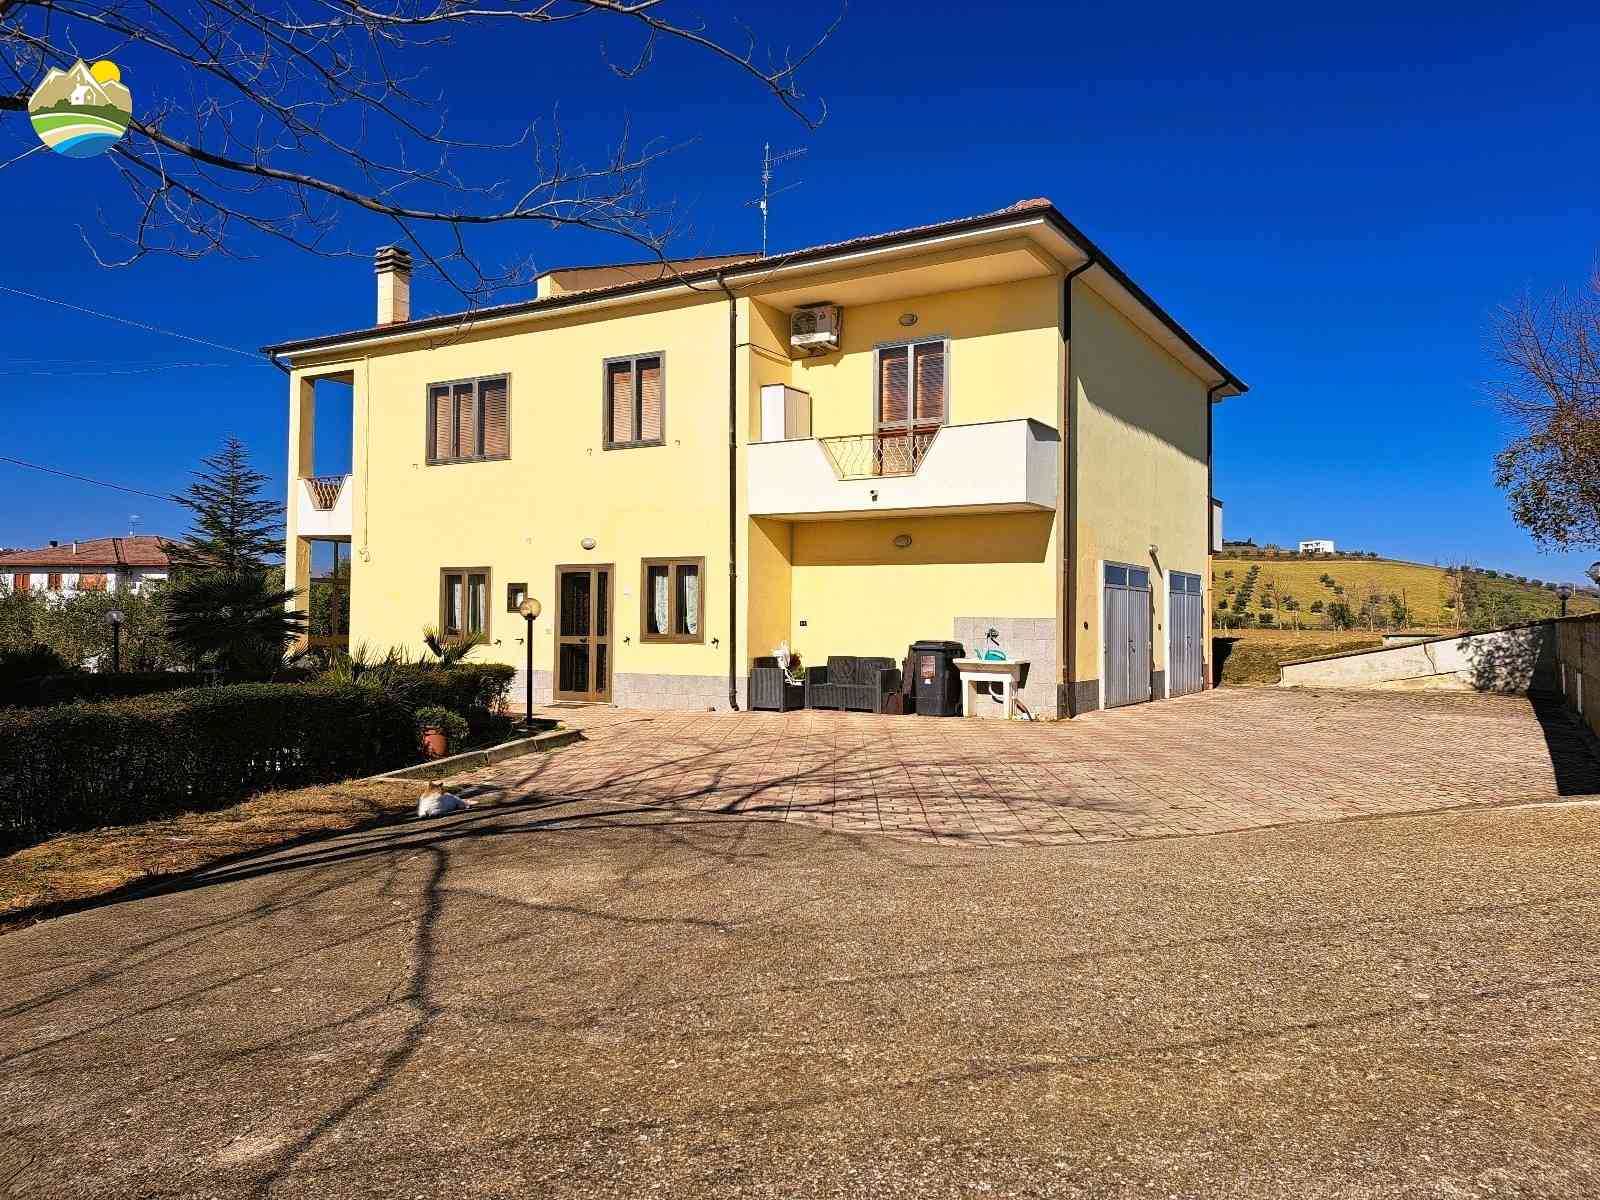 Casa di campagna Casa di campagna in vendita Montefino (TE), Casa Fiorella - Montefino - EUR 197.607 600